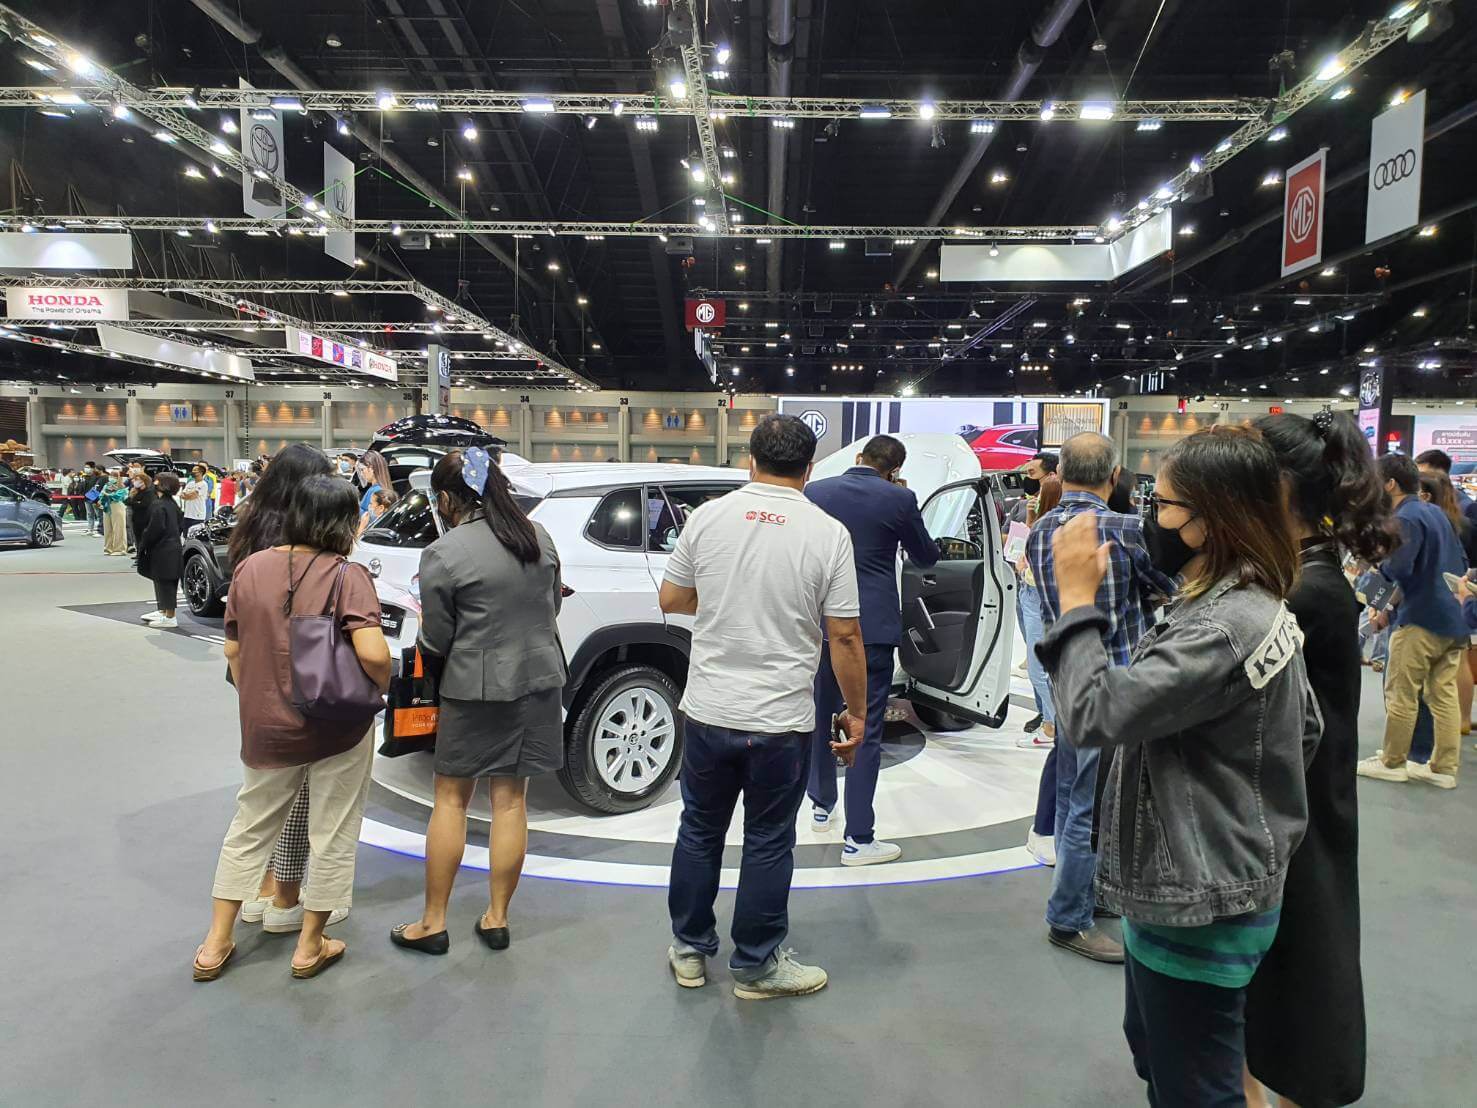 COROLLA CROSS สร้างปรากฏการณ์ฝ่าวิกฤต COVID-19 ยอดจองเฉพาะในงาน Bangkok International Motor Show 2020 ทะลุกว่า 400 คัน